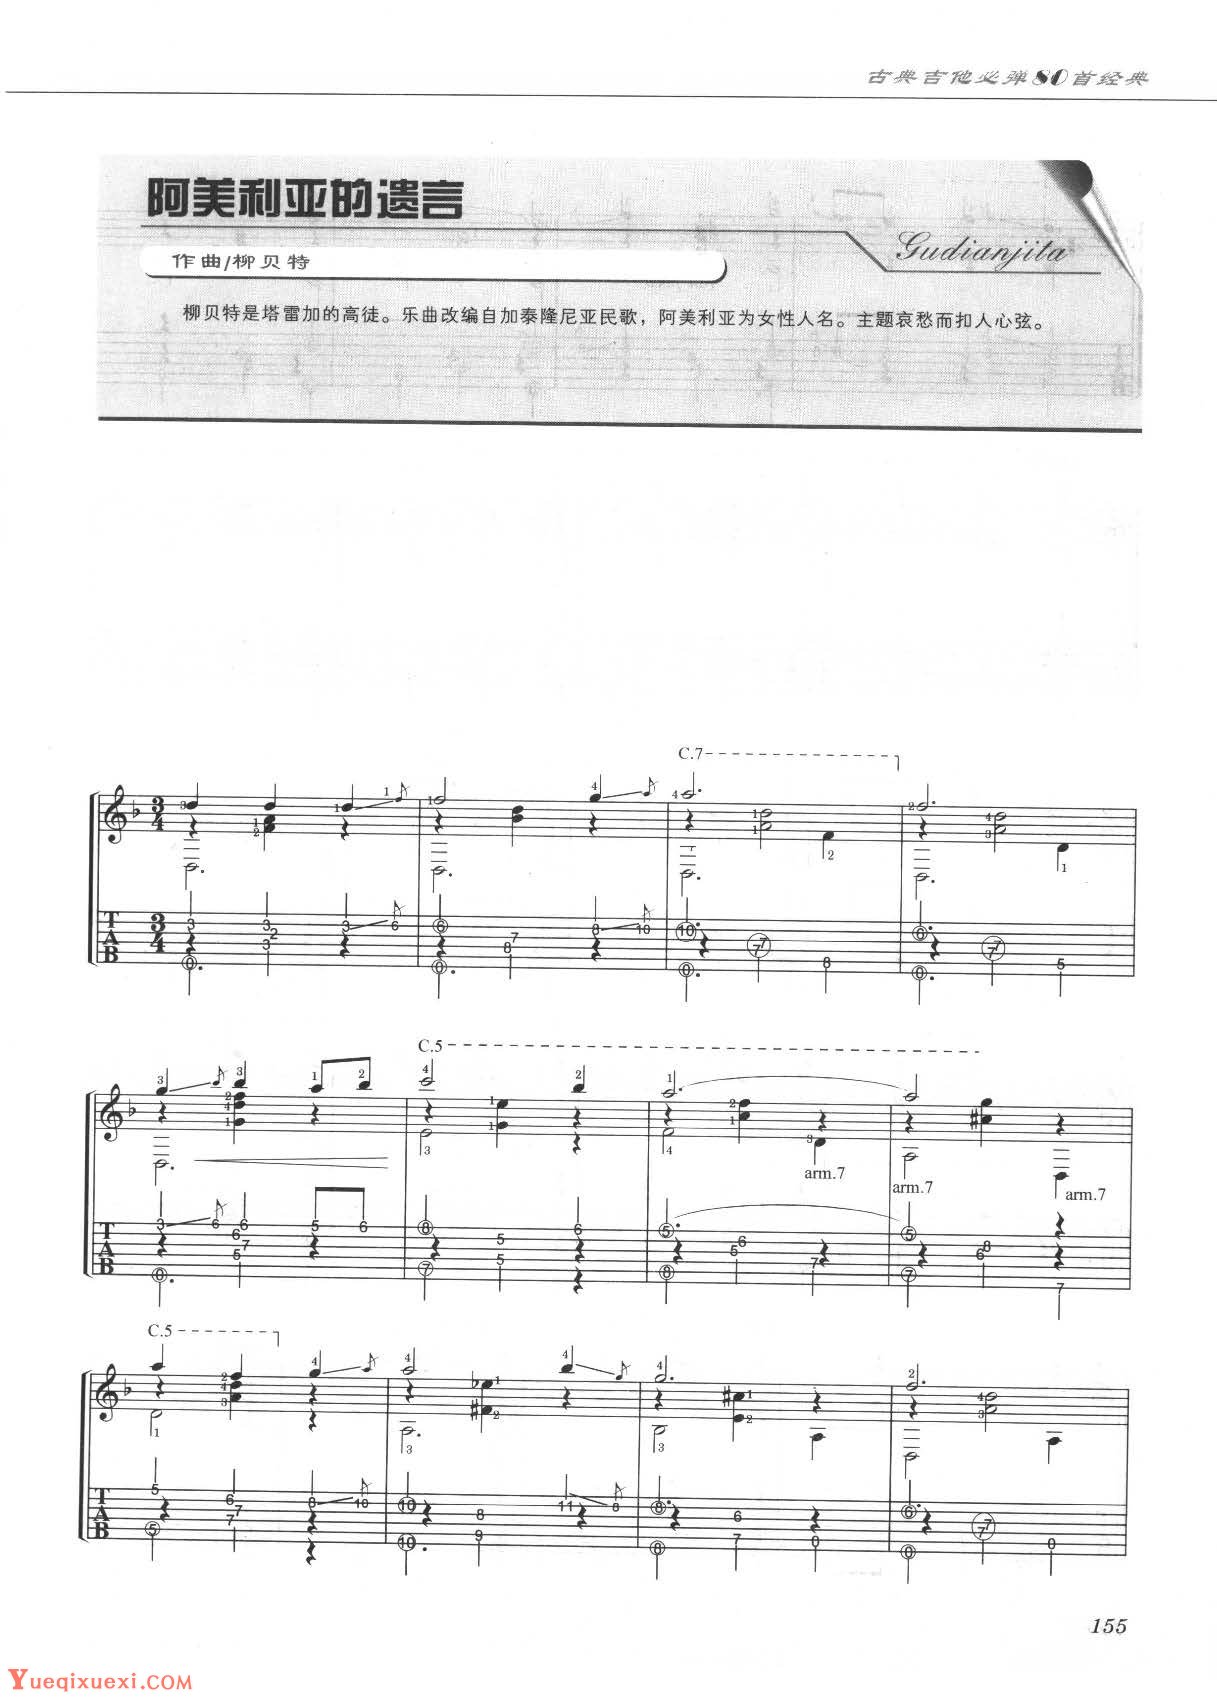 《1. 台湾民谣 (阿美山歌,钢琴谱》姜元禄 改编（五线谱 钢琴曲 指法）-弹吧|蛐蛐钢琴网